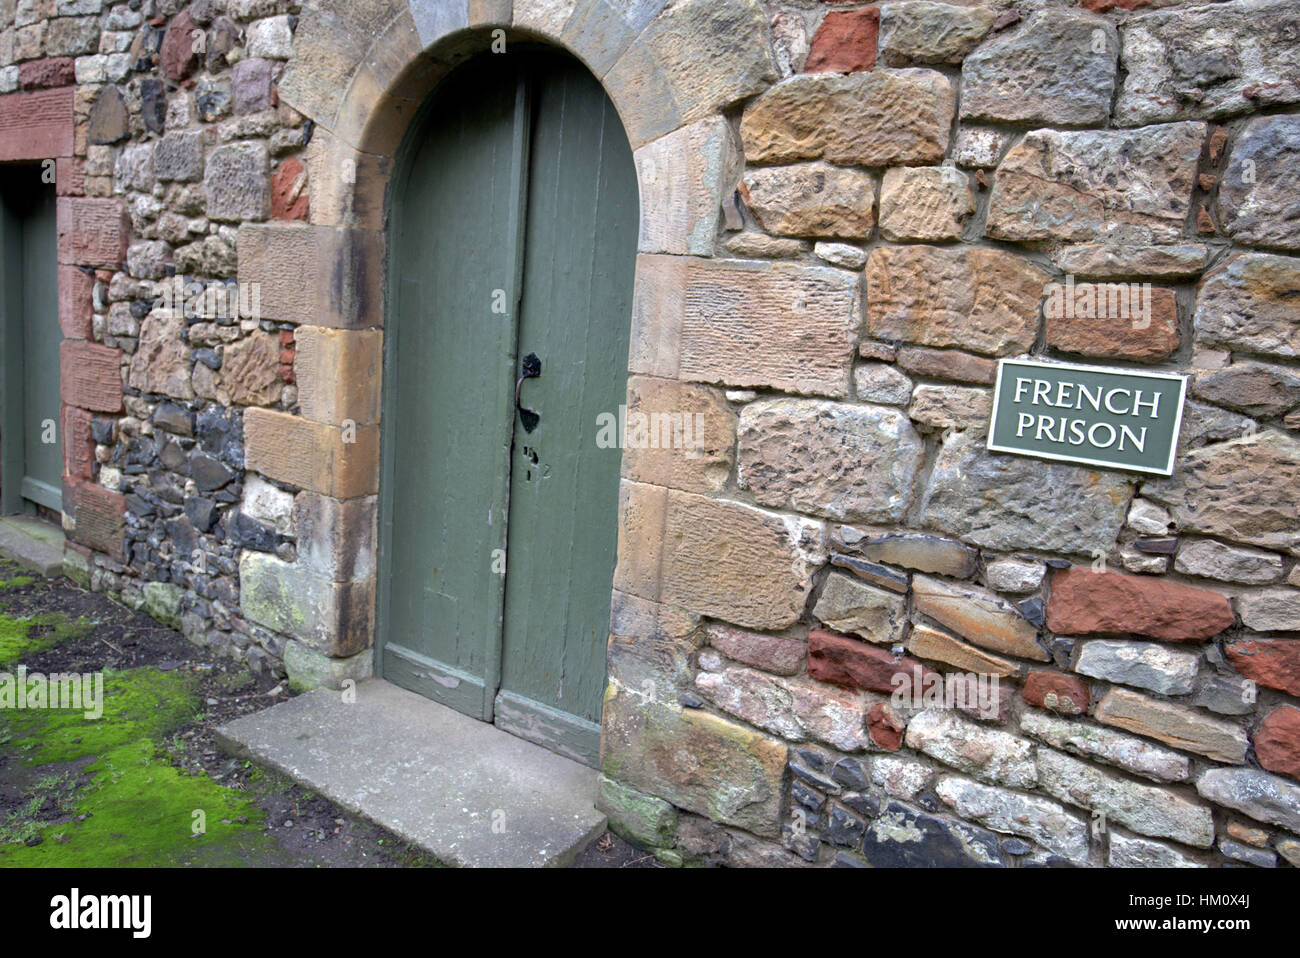 La prison française Château de Dumbarton en Écosse. Il surplombe la ville écossaise de Dumbarton Banque D'Images